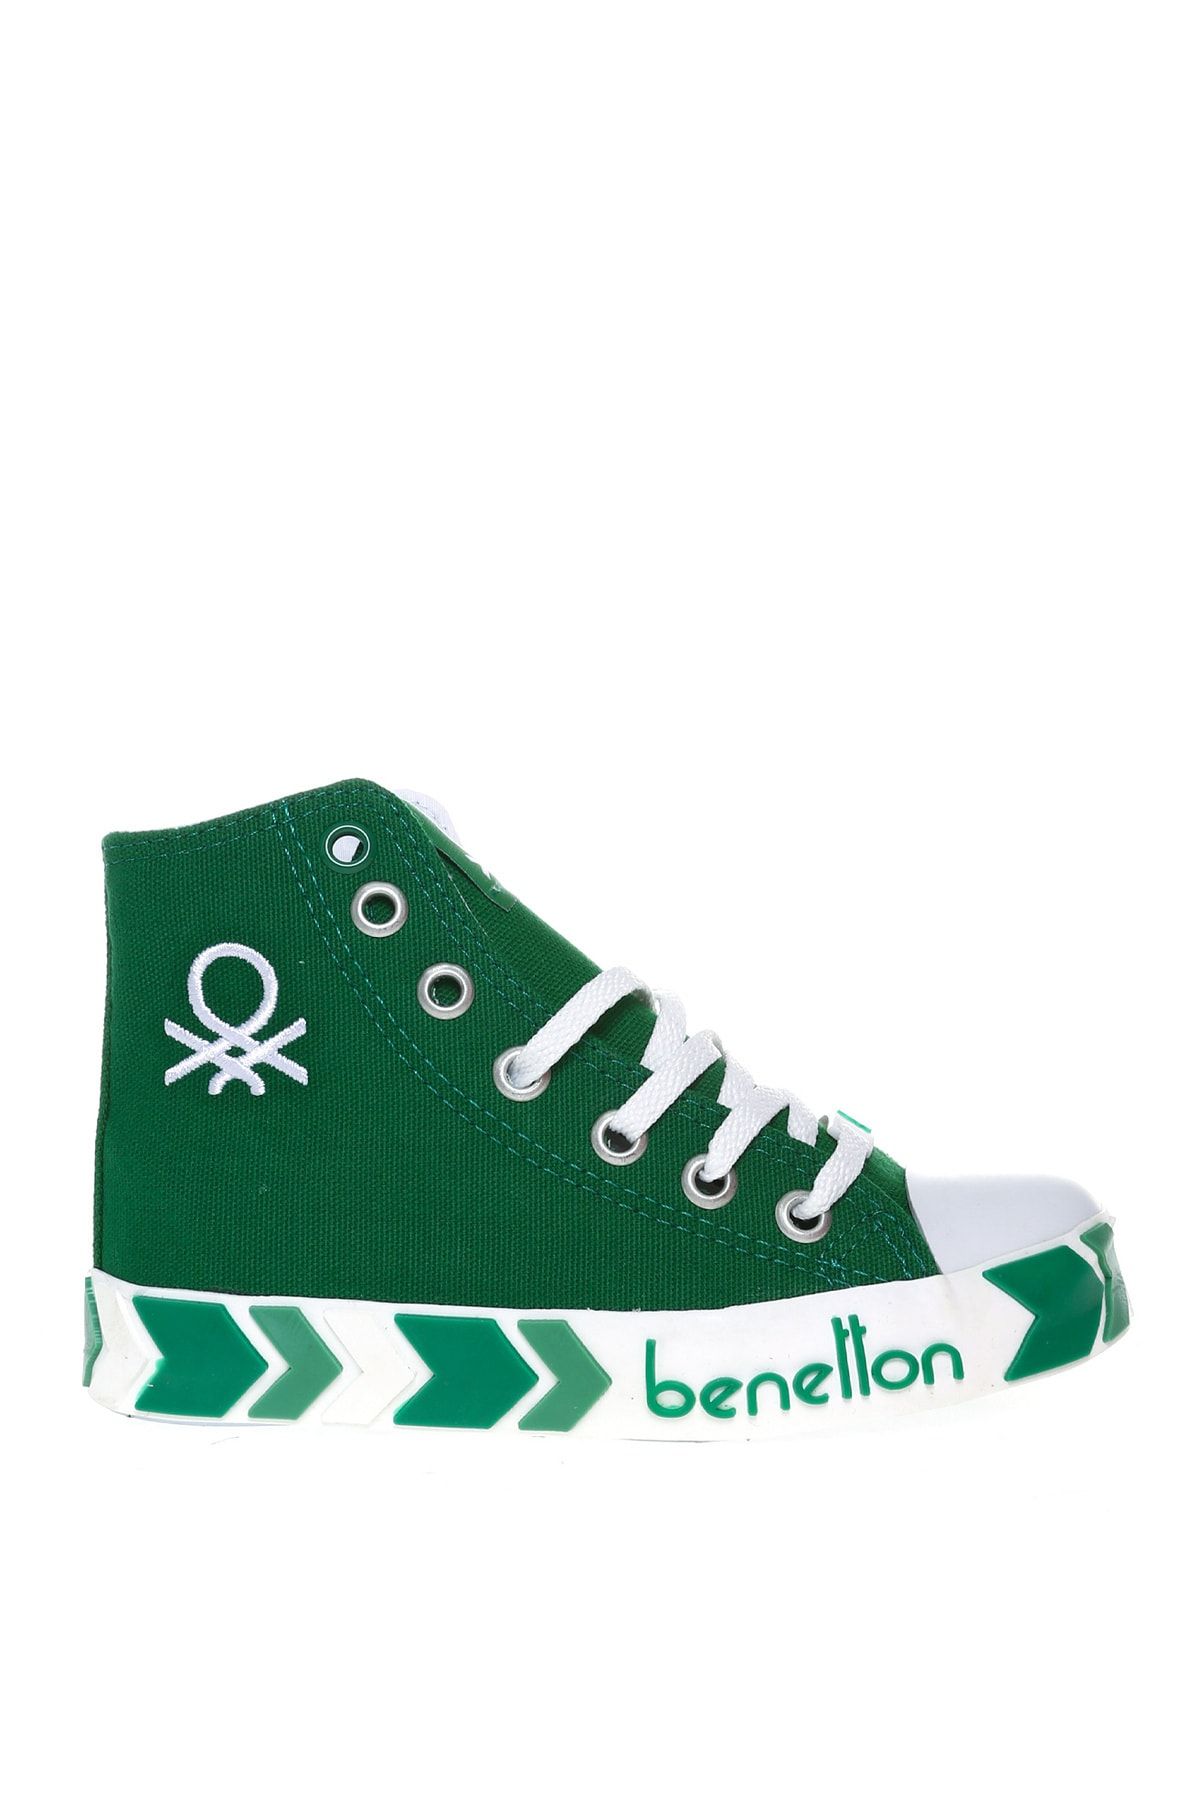 Benetton Yeşil Erkek Çocuk Yürüyüş Ayakkabısı BN-30634 91-Yesil